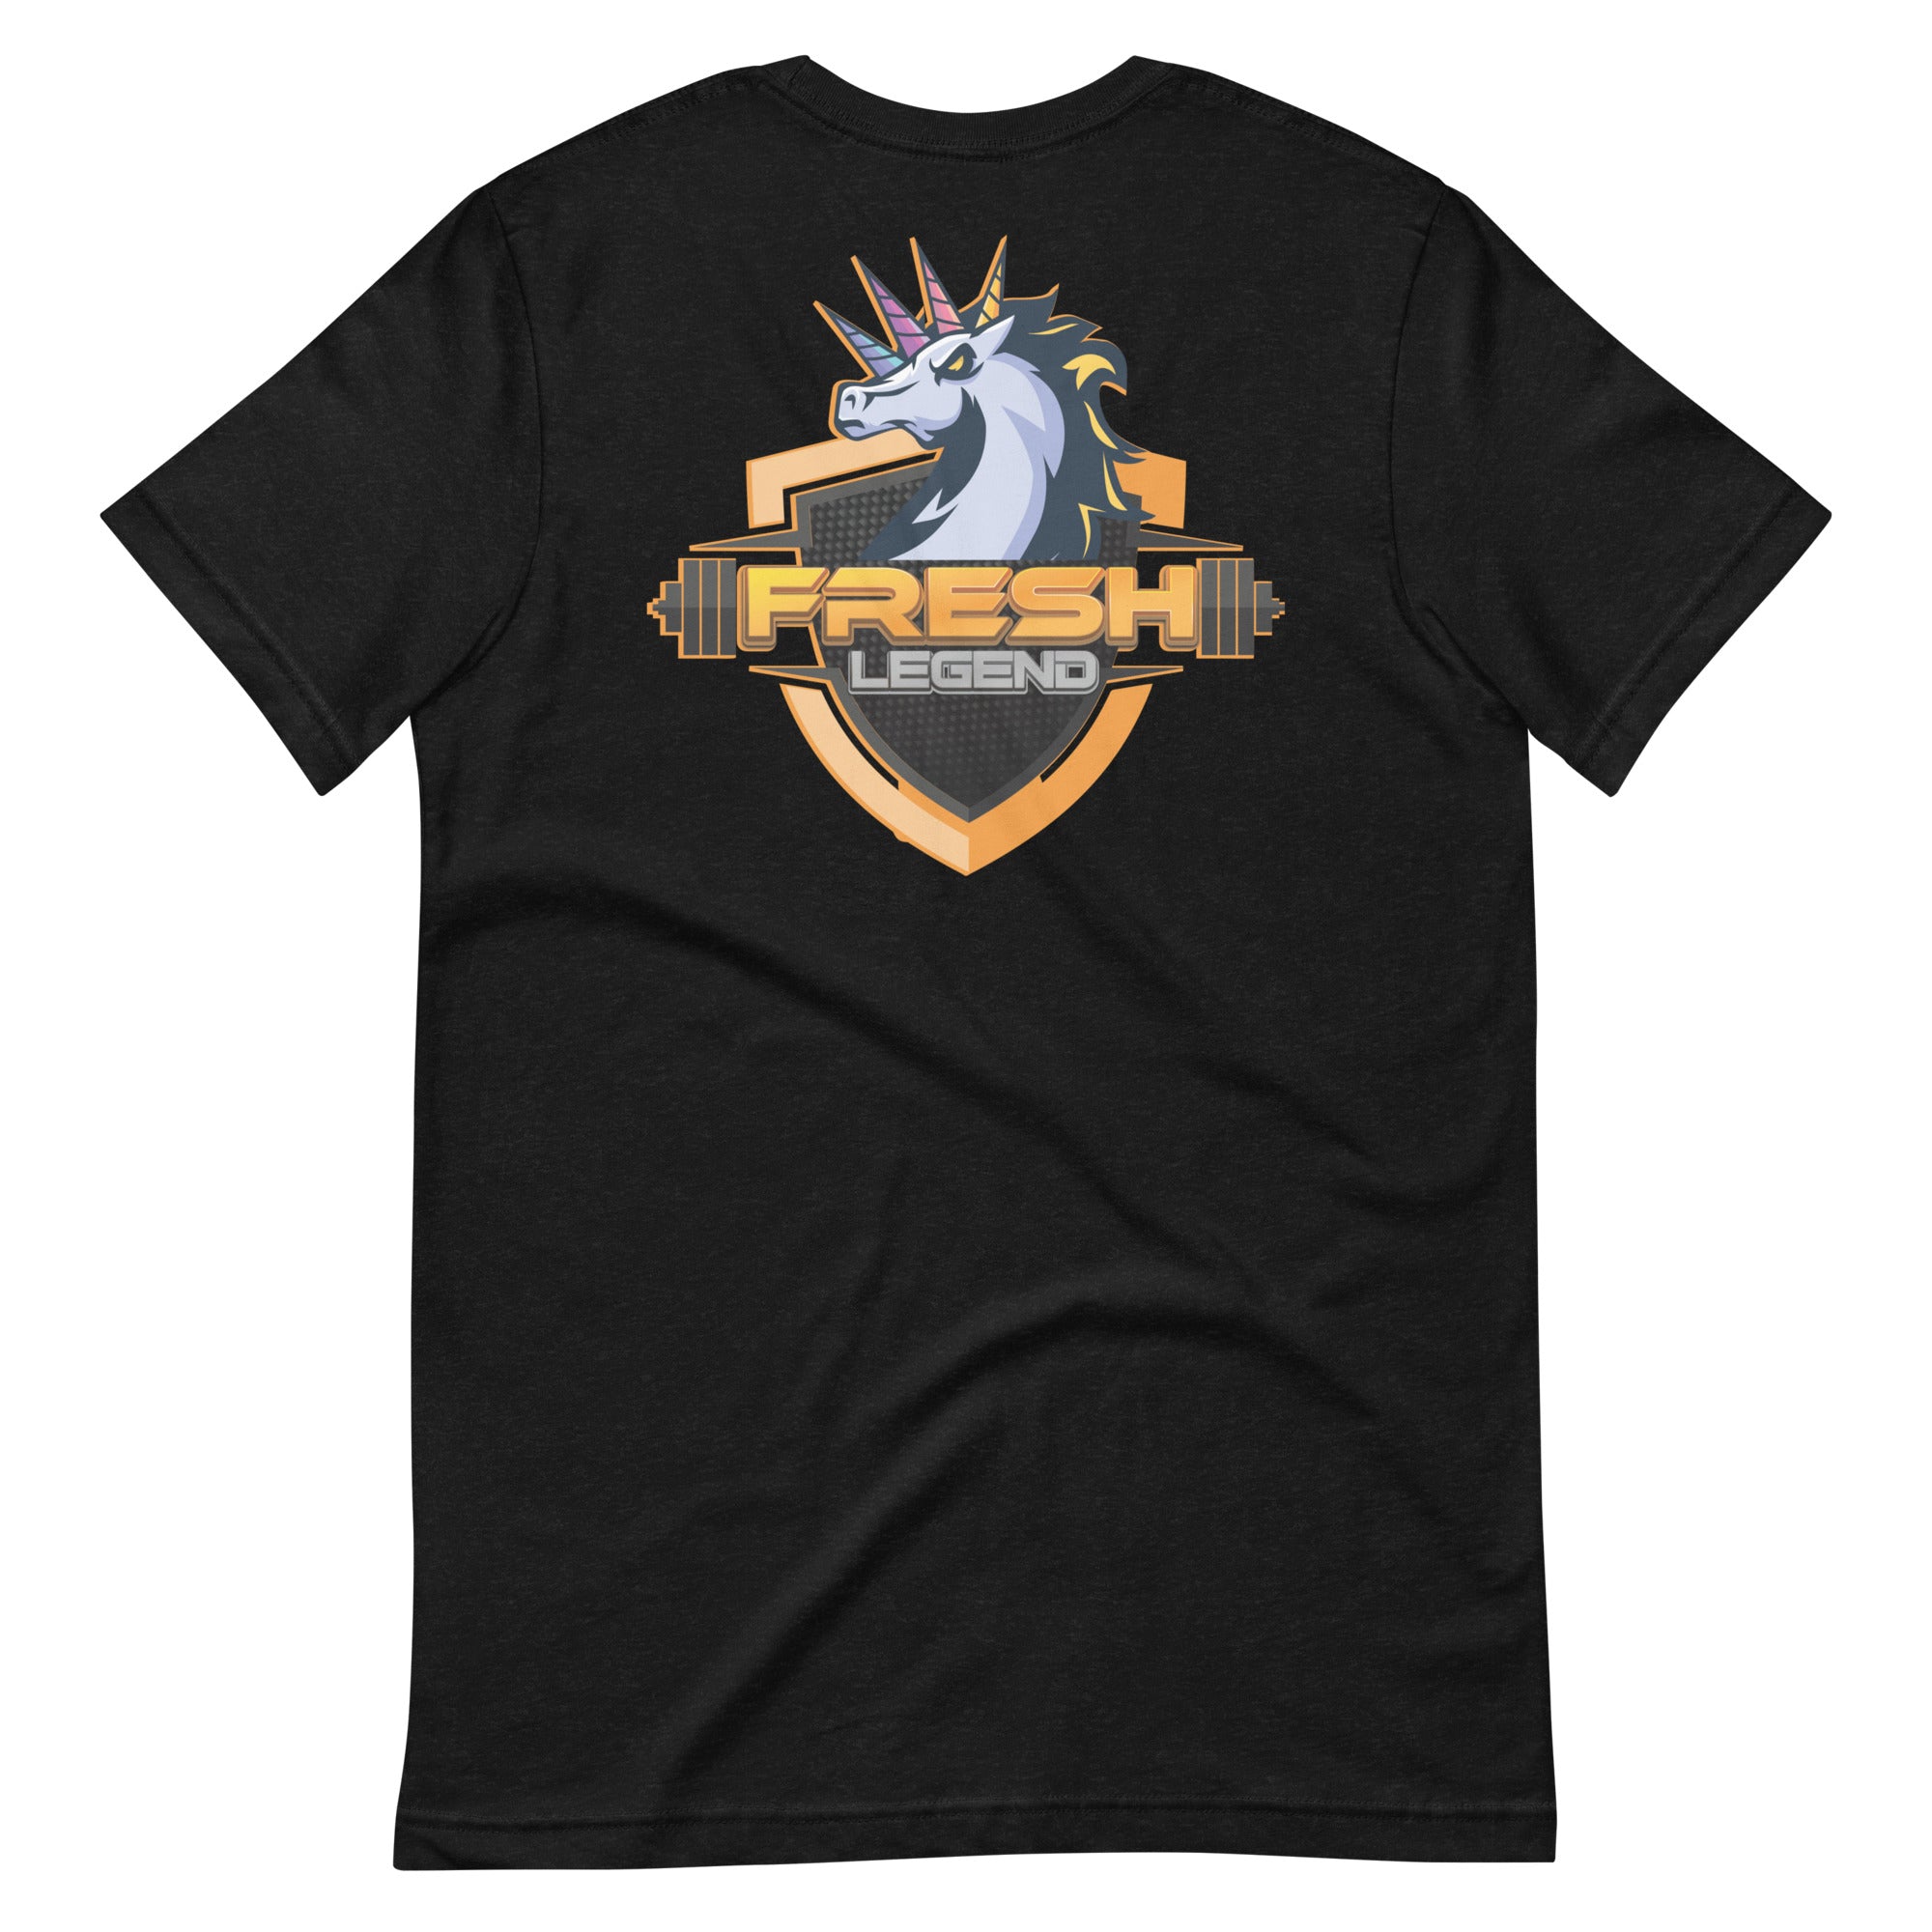 Fresh Level Up: Legend | Unisex t-shirt